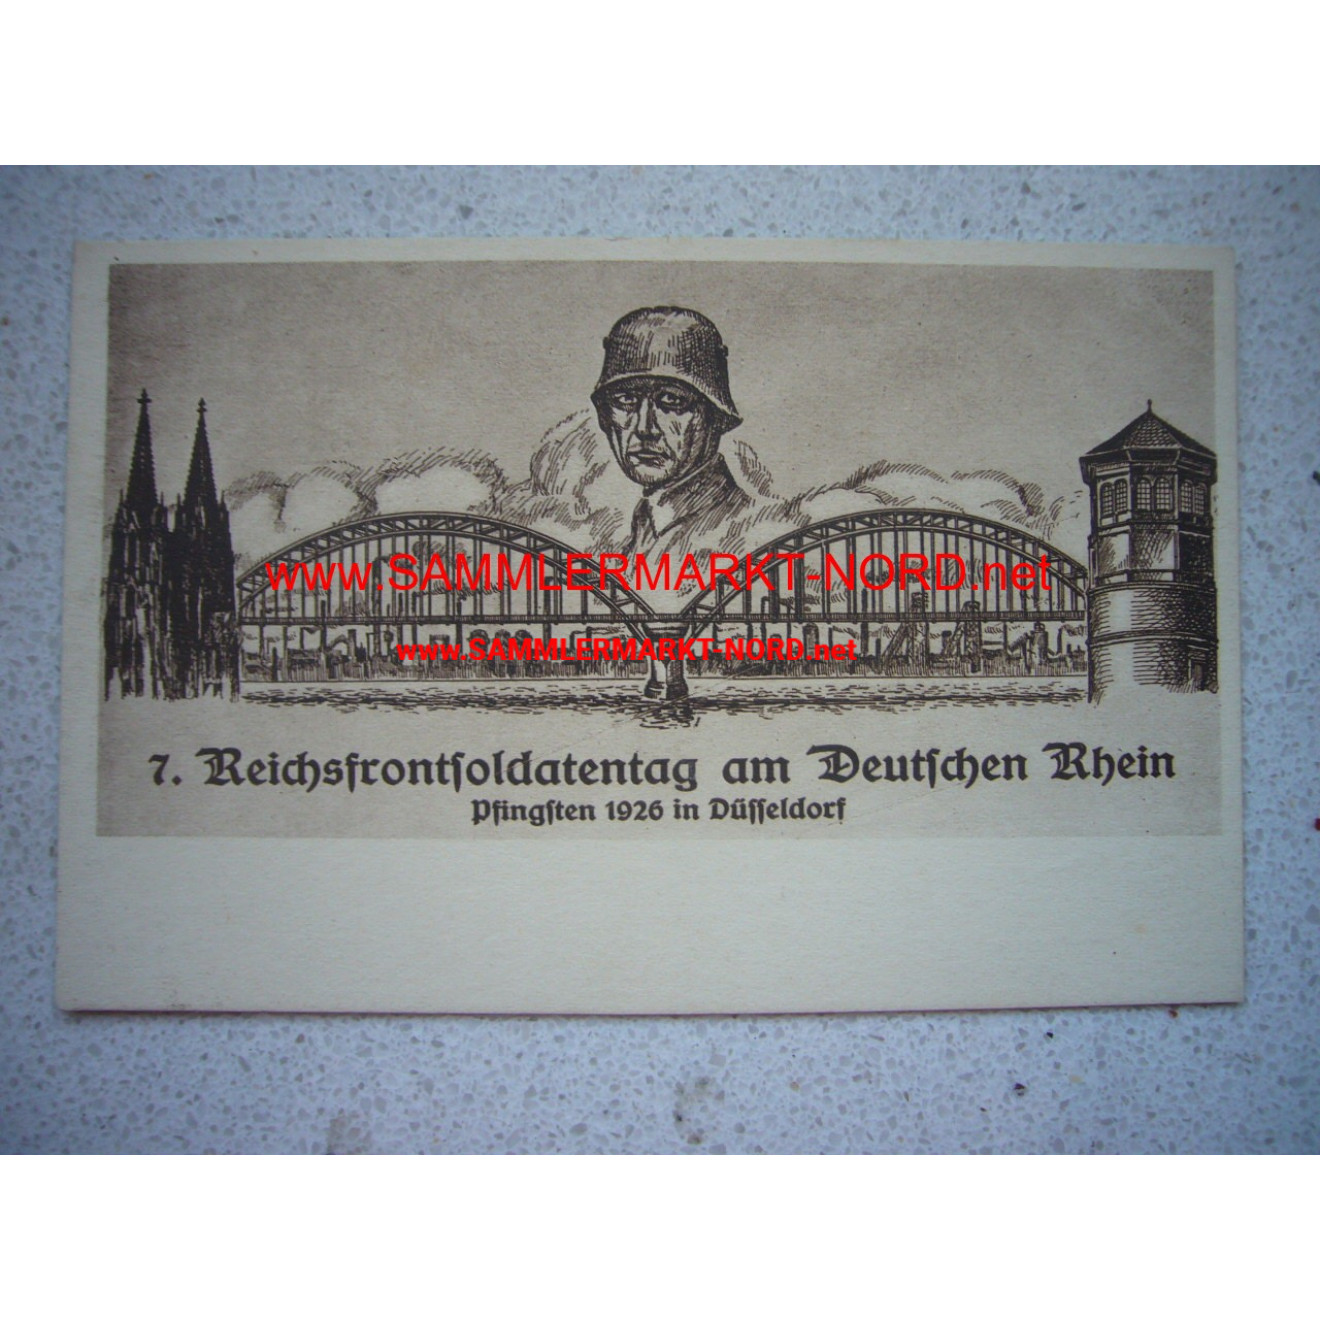 7. Reichsfrontsoldatentag am Deutschen Rhein - Düsseldorf 1926